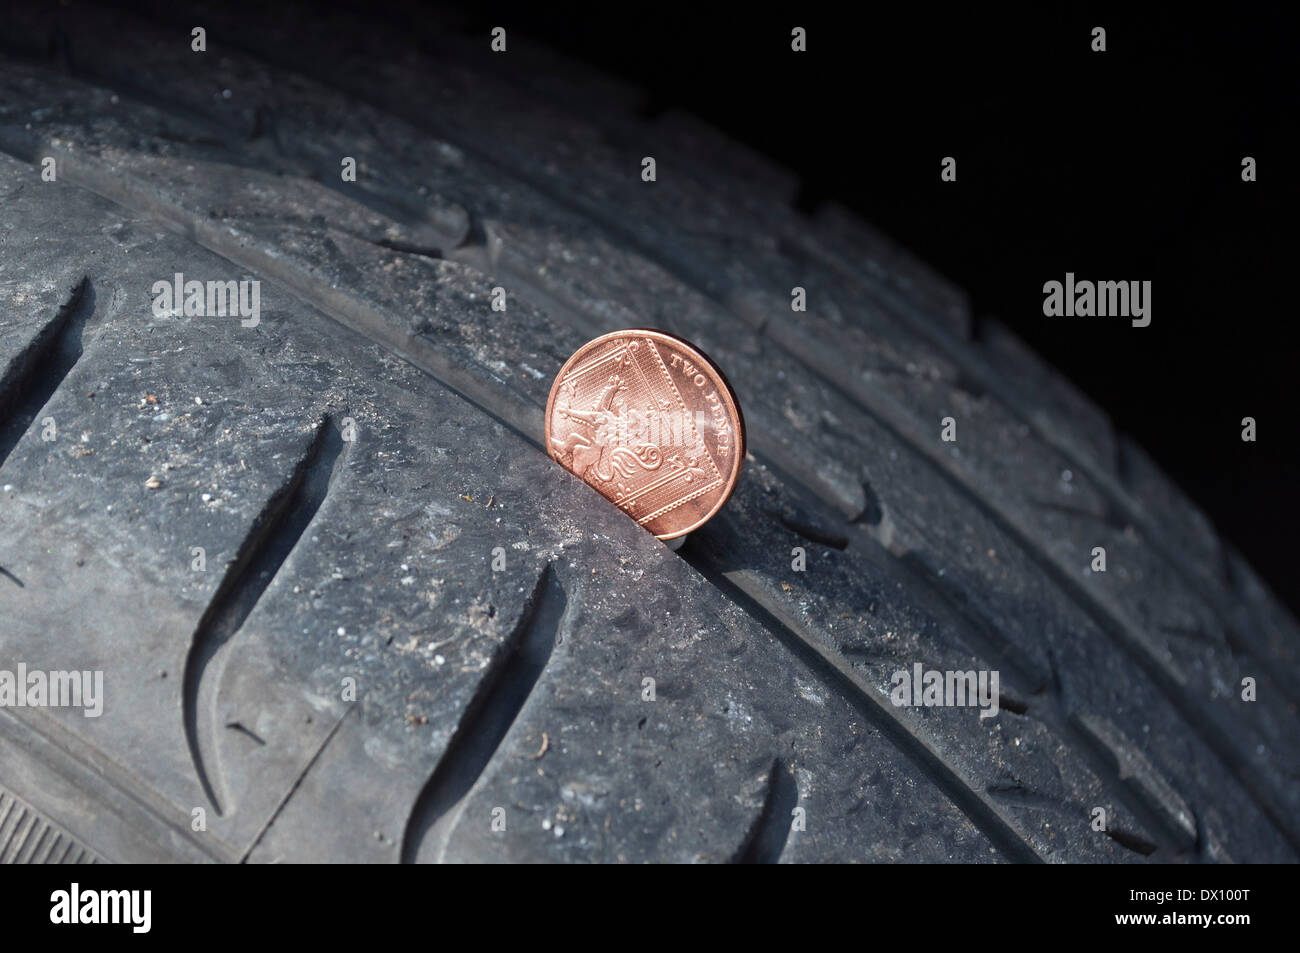 Vérifier la profondeur des sculptures d'un pneu de voiture à l'aide d'un coin Banque D'Images